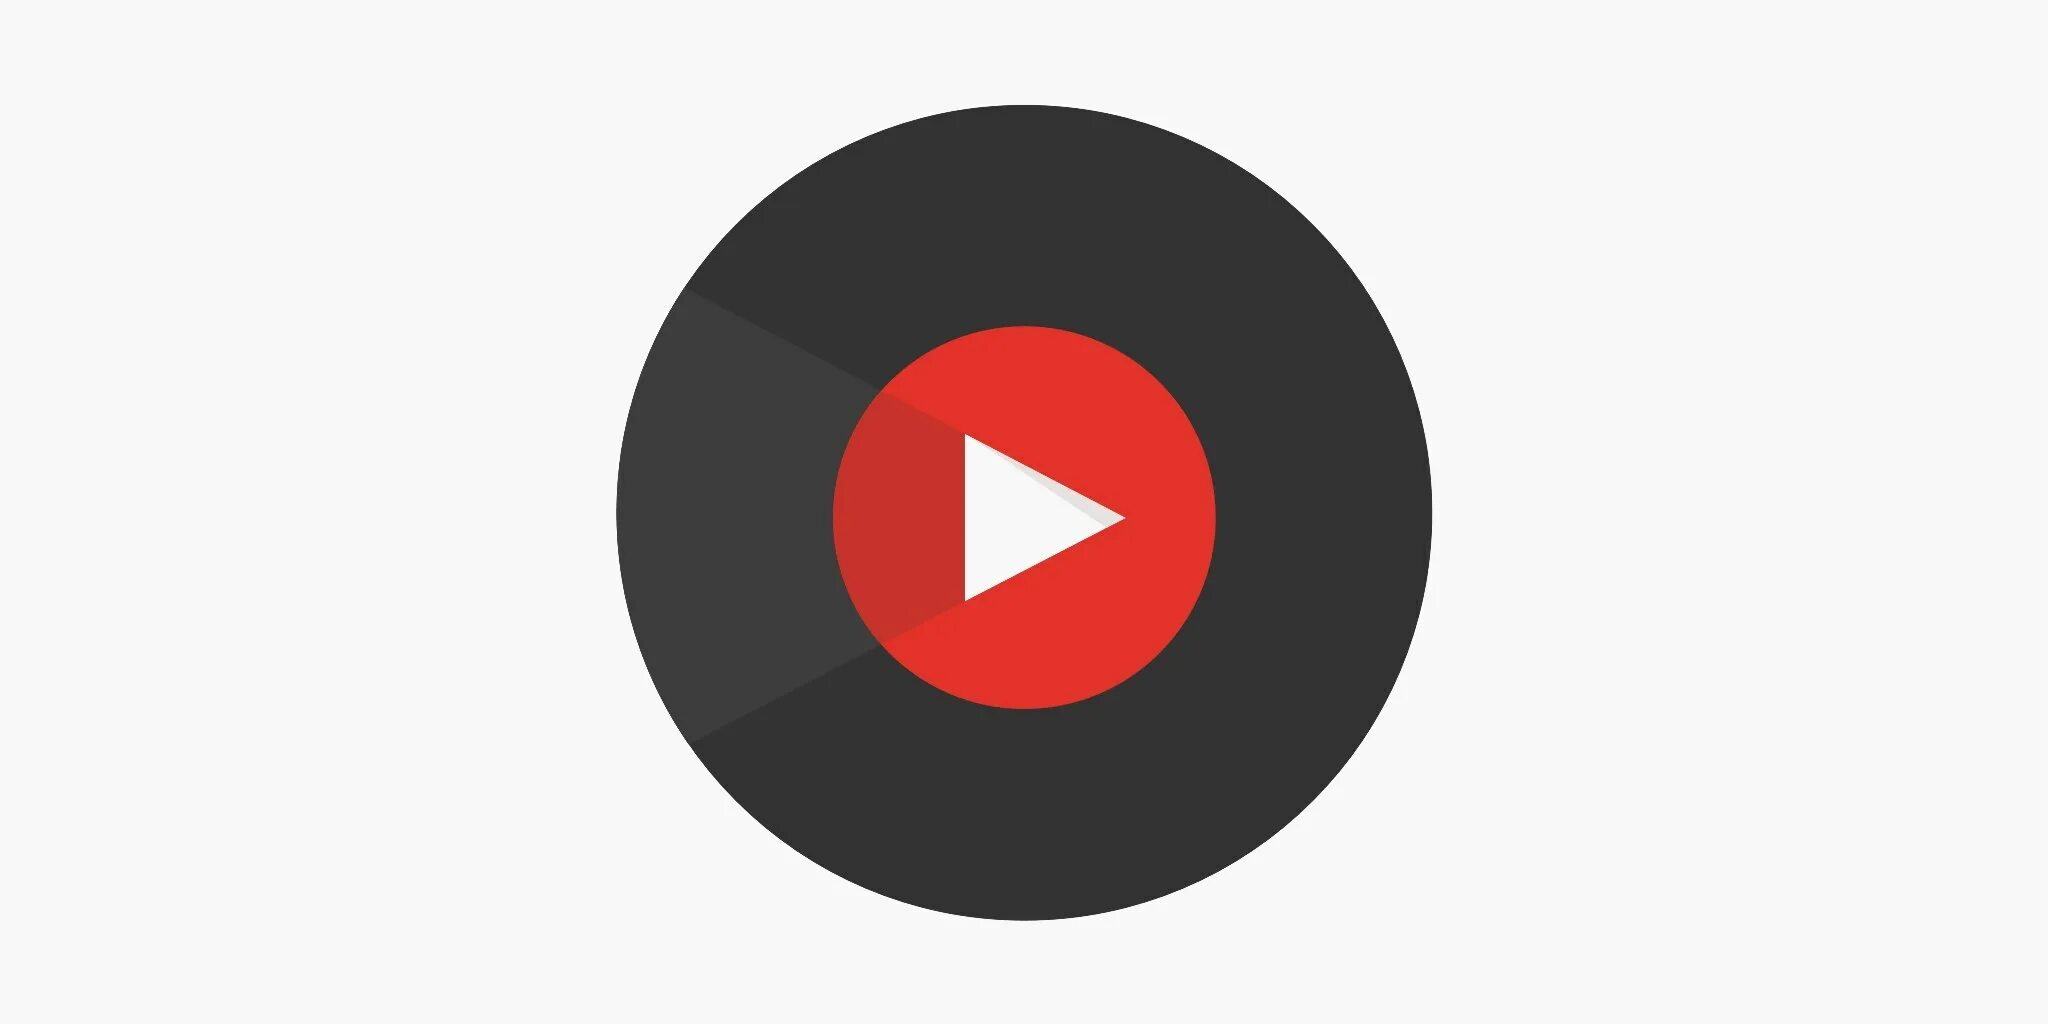 Ne официальная страница ютуб музыка. Youtube Music логотип. M youtube. Значок ютуб музыка. Логотип youtube Music PNG.